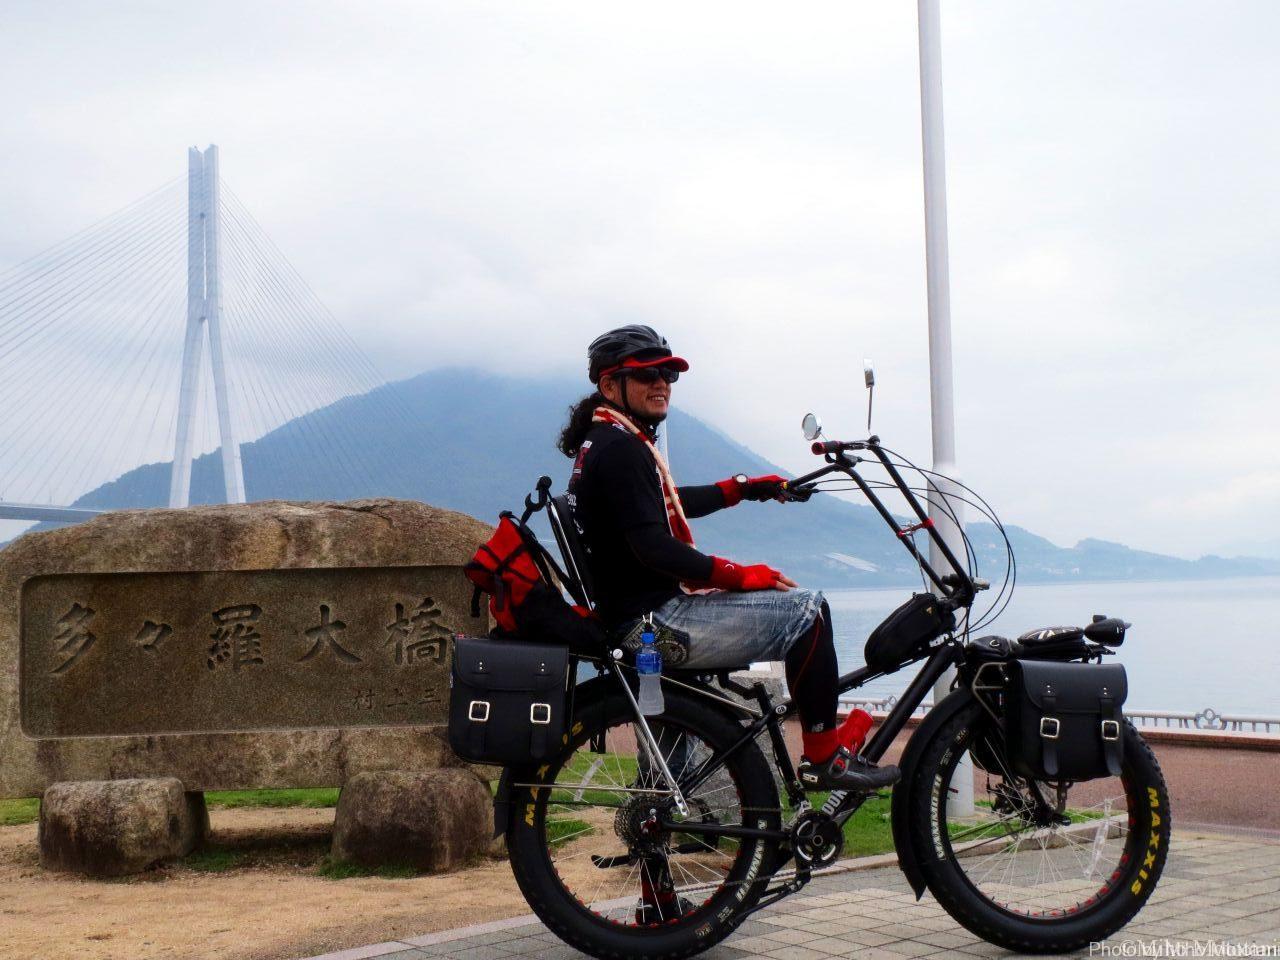 ファットバイク大改造 アメリカンなドム と一緒に 向島 大三島70kmサイクリング ミホとめぐる尾道